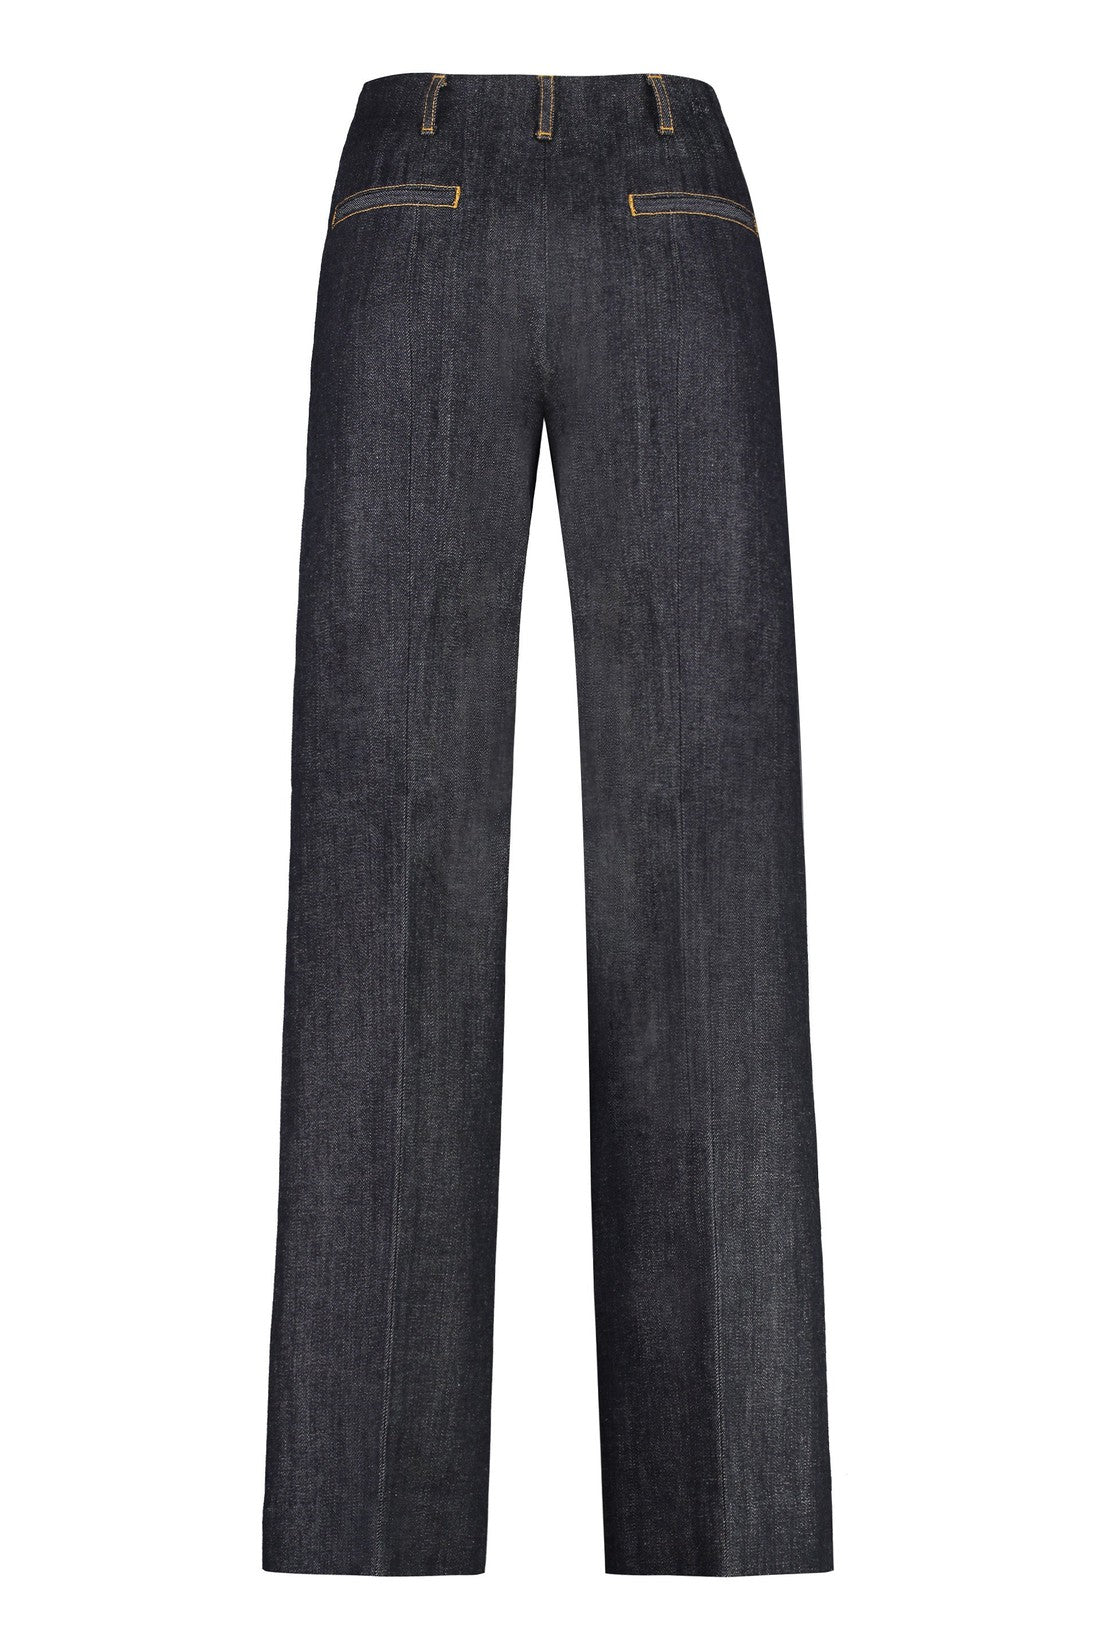 Tory Burch-OUTLET-SALE-Wide-leg jeans-ARCHIVIST